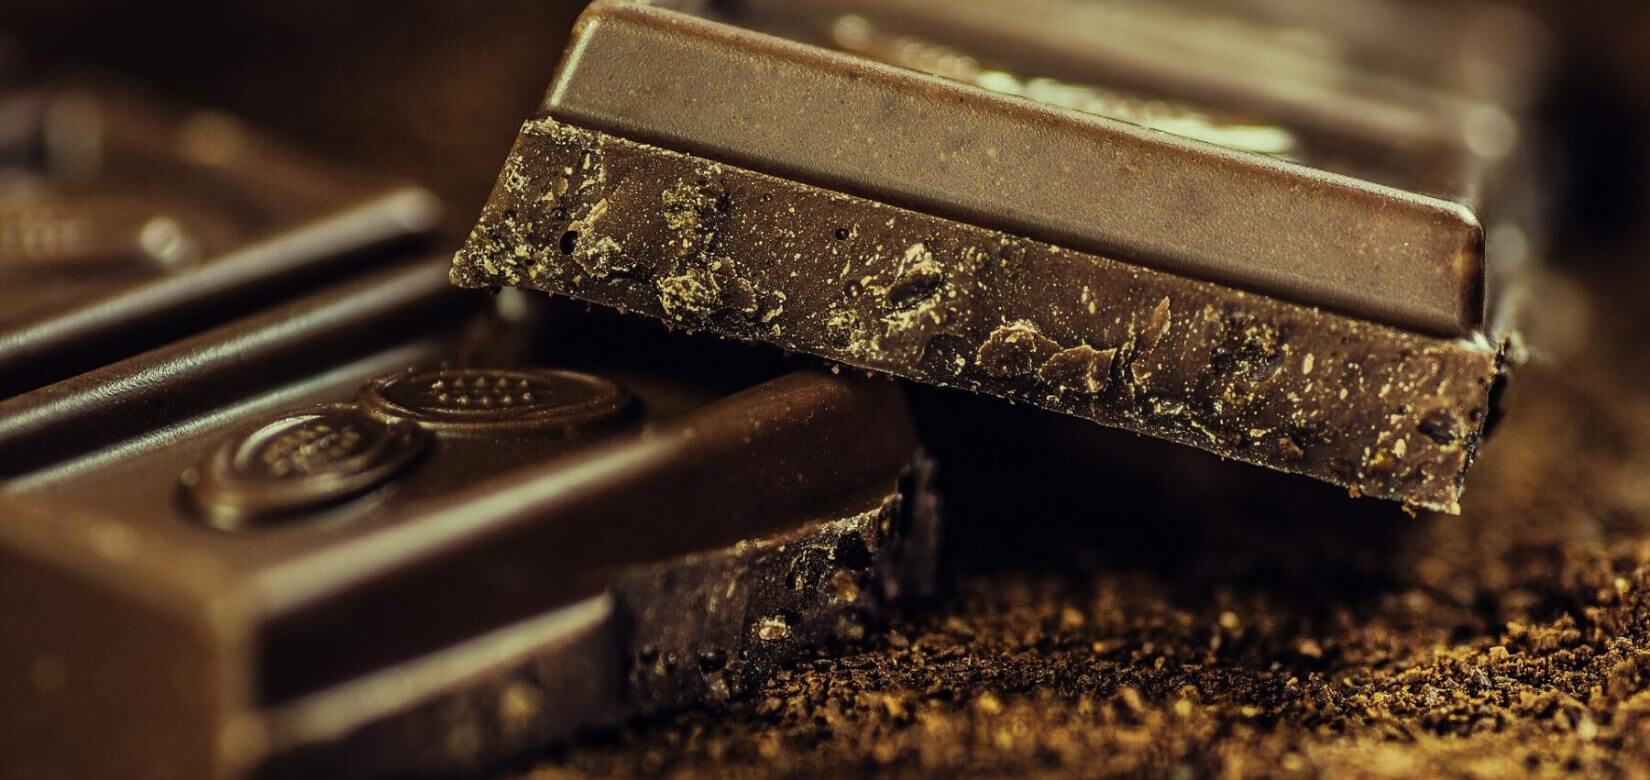 Ποια σοκολάτα πιστεύετε ότι είναι πιο παχυντική;